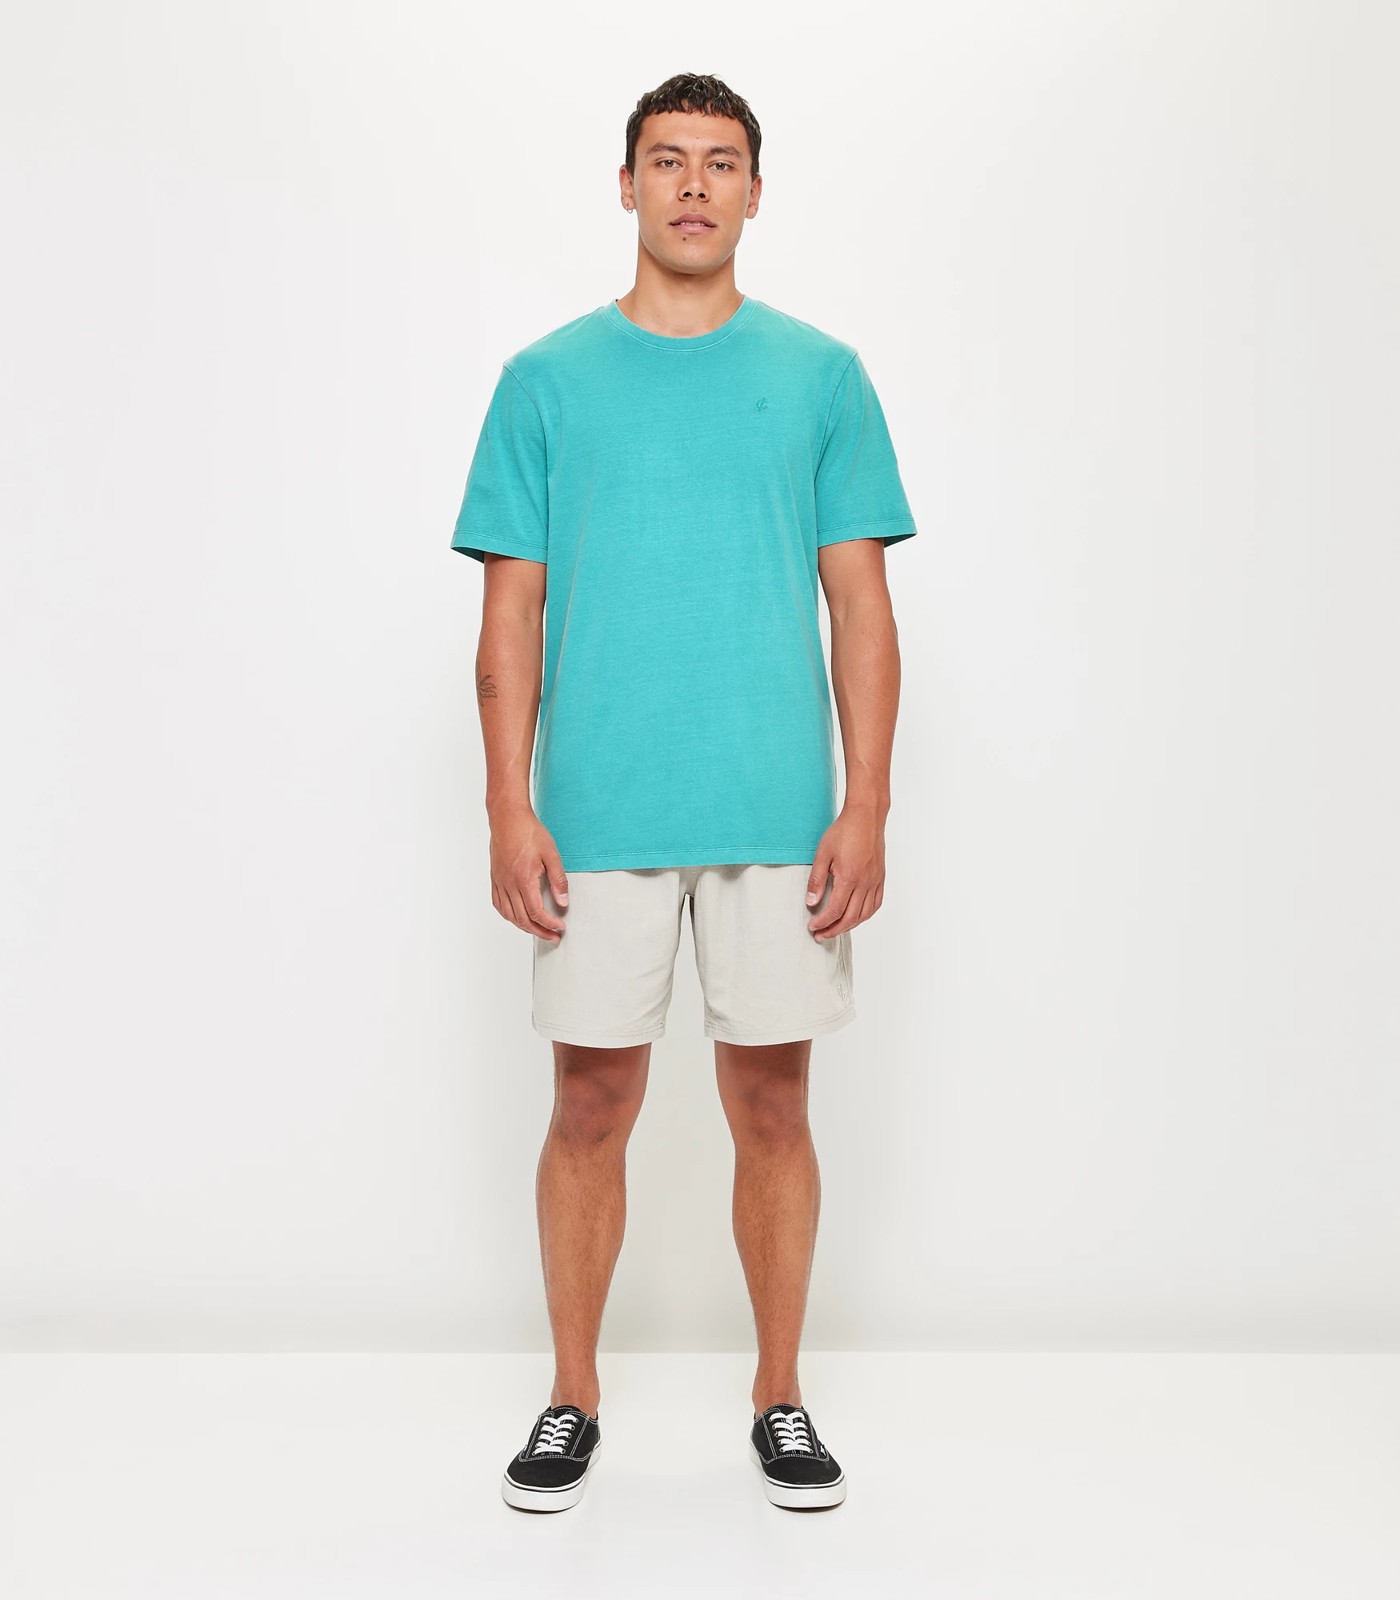 Commons Garment Dye T-Shirt - Teal | Target Australia